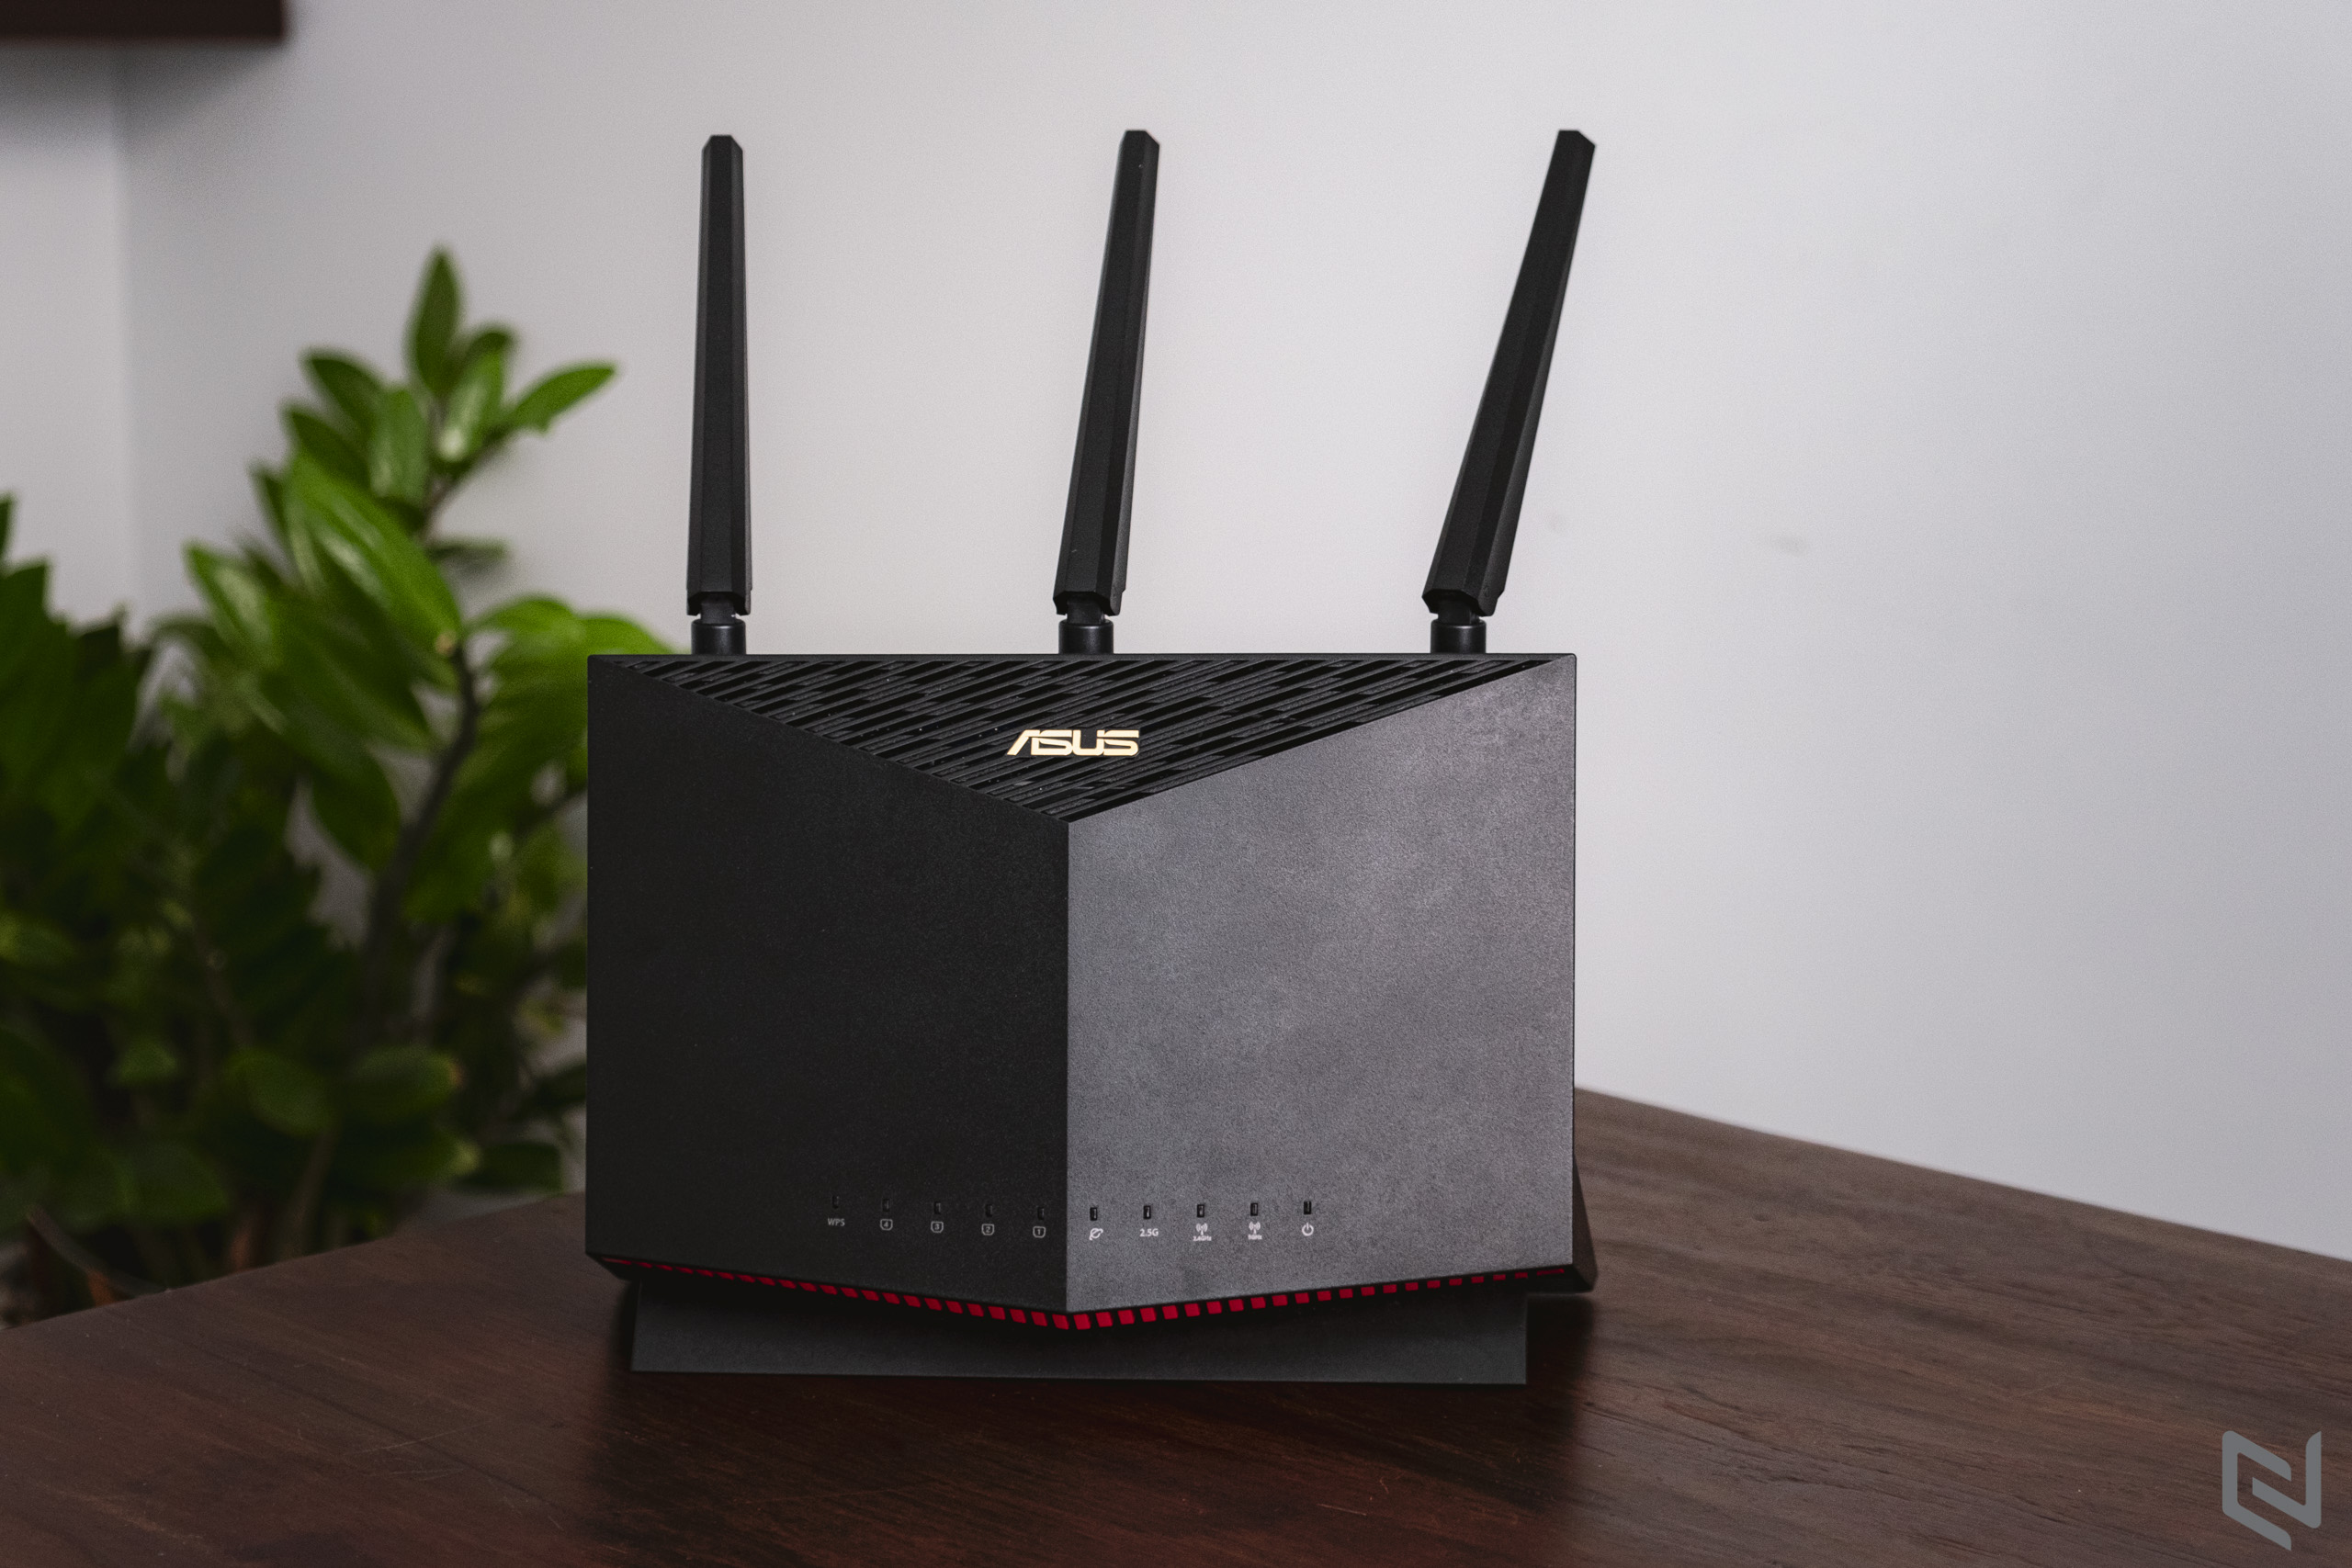 Trên tay router ASUS RT-AX86U, lựa chọn Wi-Fi 6 dành riêng cho game thủ